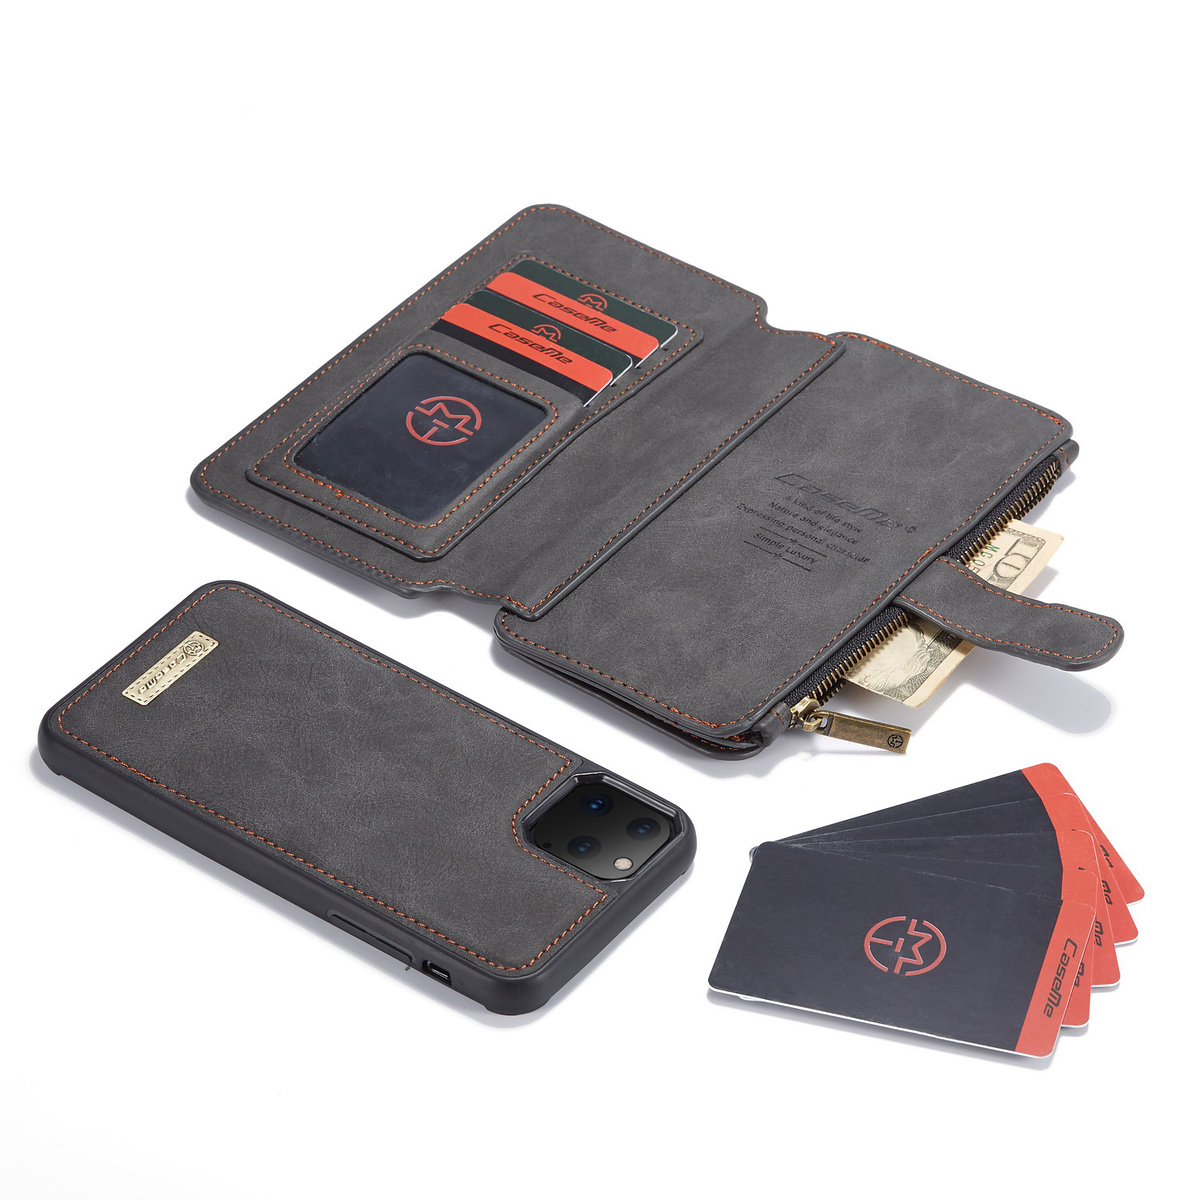 CaseMe plånboksfodral med magnetskal, iPhone 11 Pro, svart